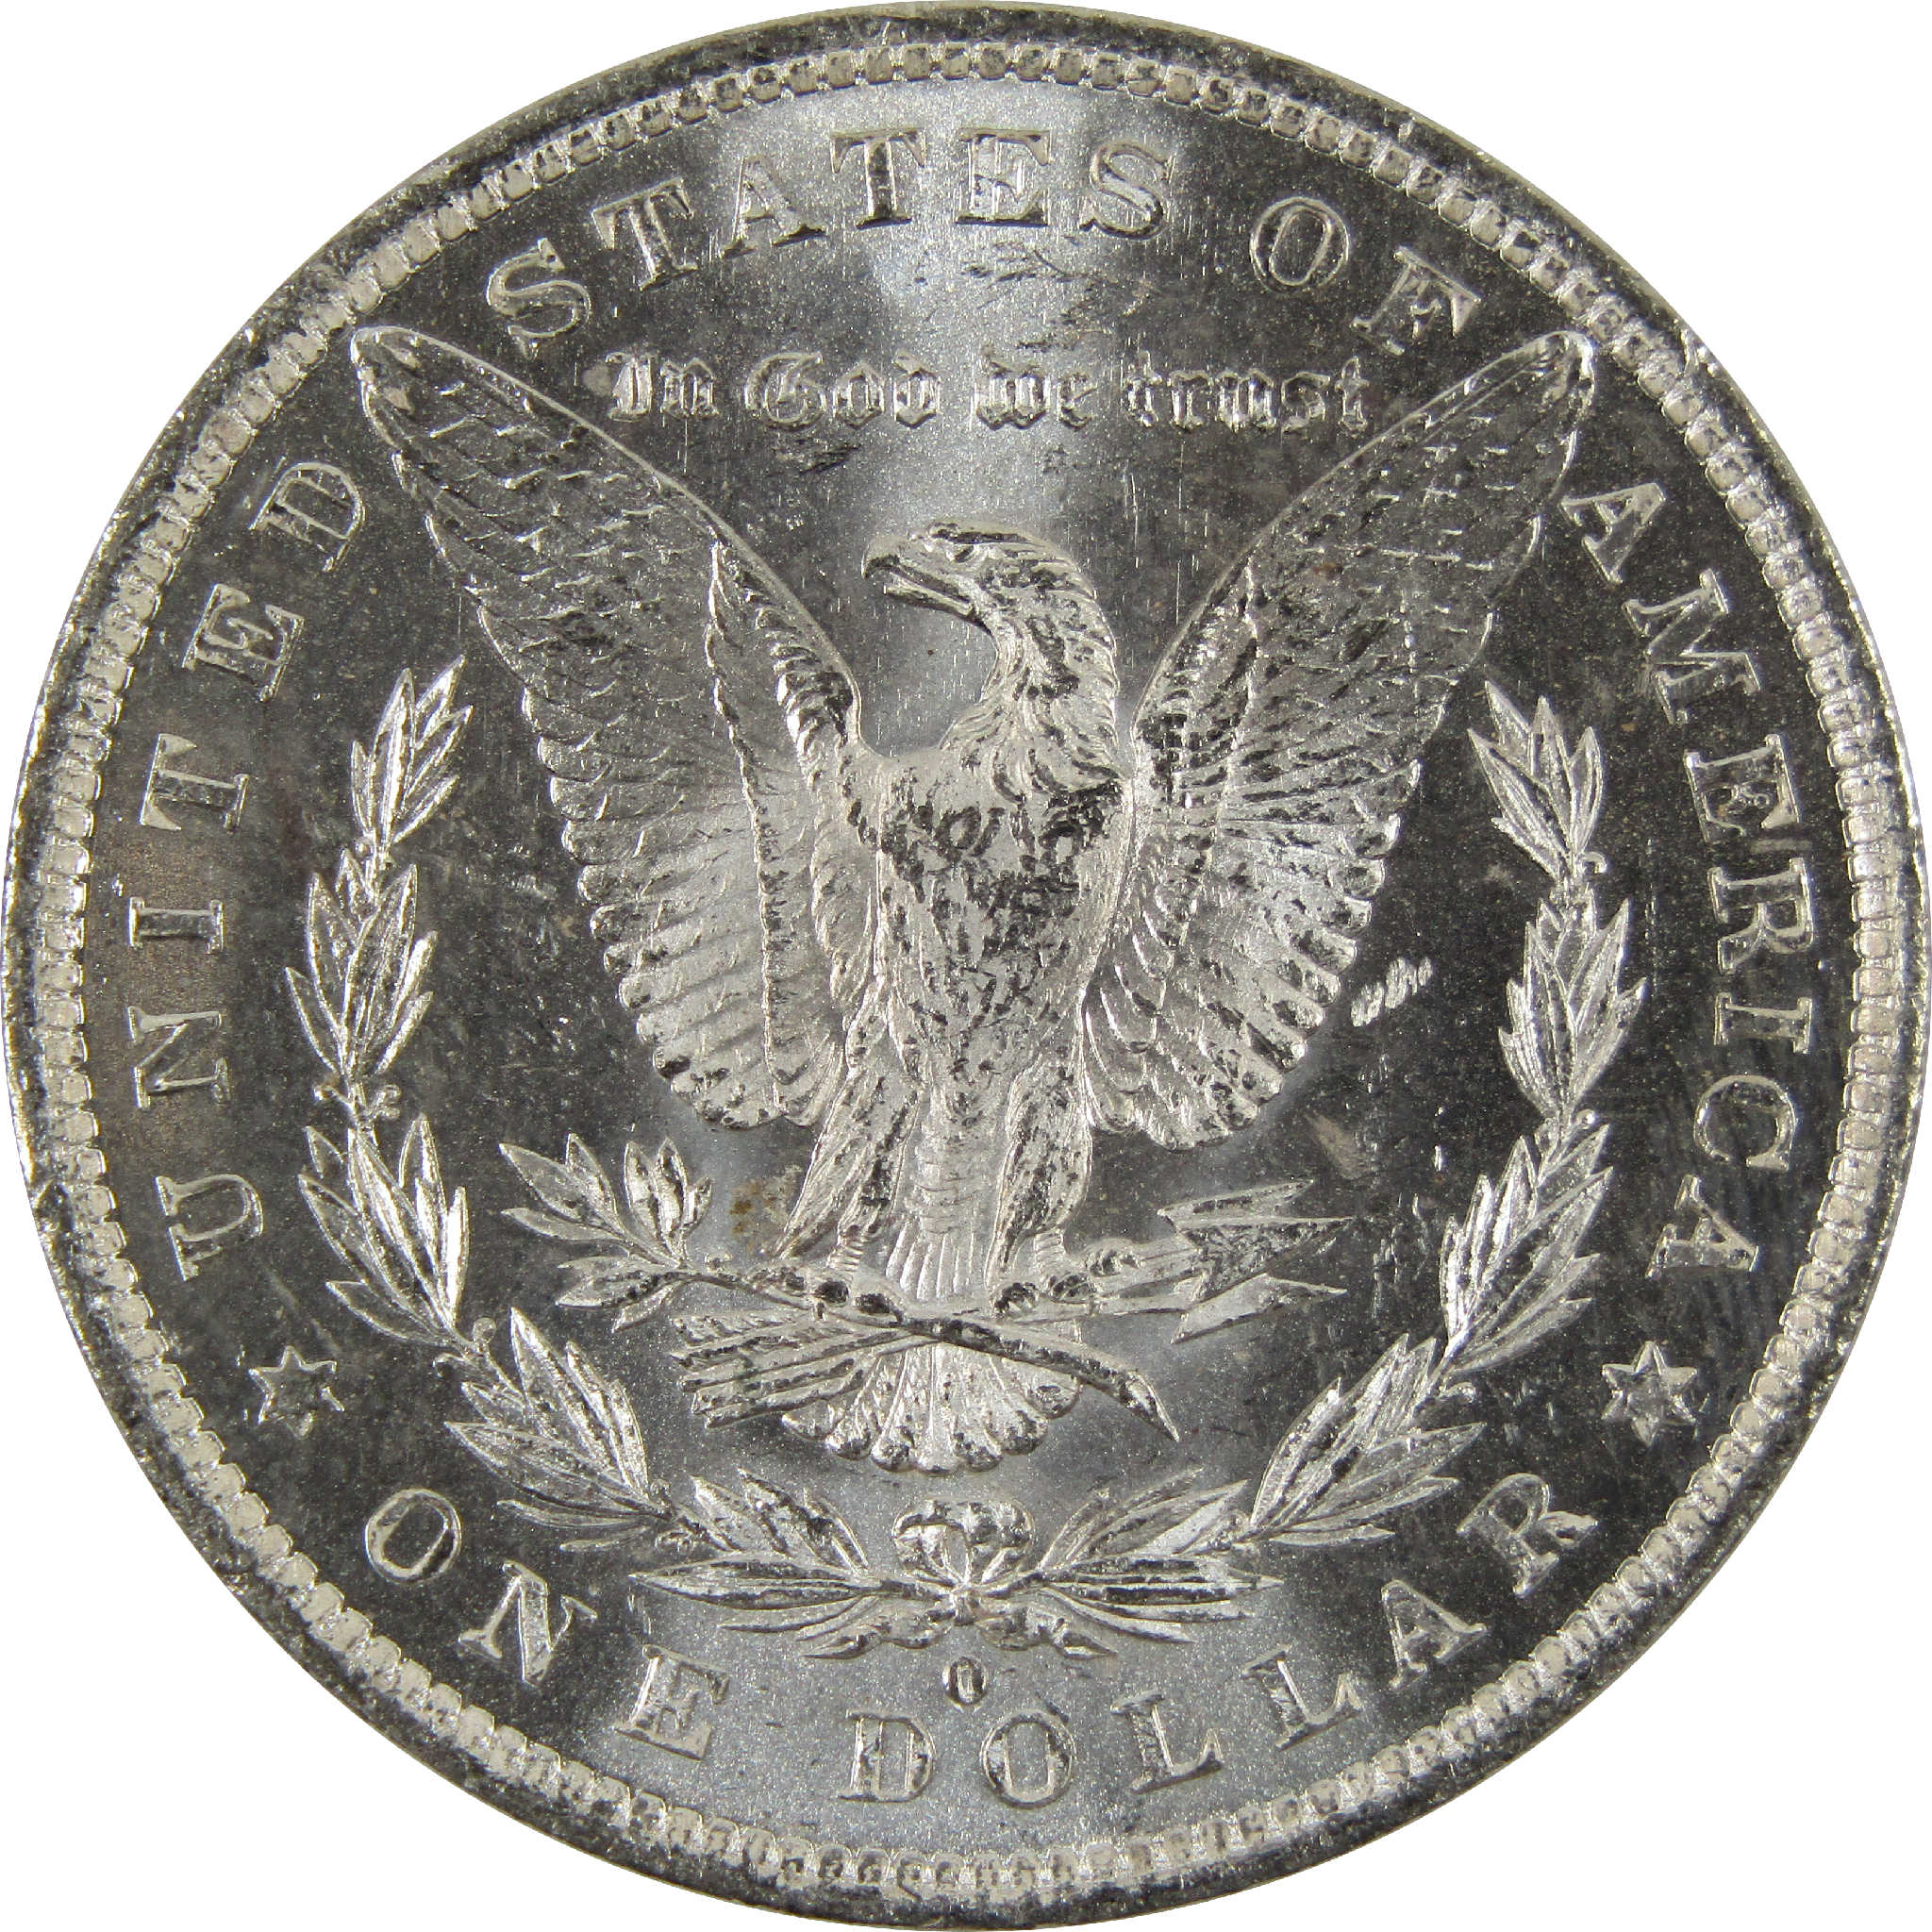 1882 O Morgan Dollar BU Uncirculated 90% Silver $1 Coin SKU:I8908 - Morgan coin - Morgan silver dollar - Morgan silver dollar for sale - Profile Coins &amp; Collectibles